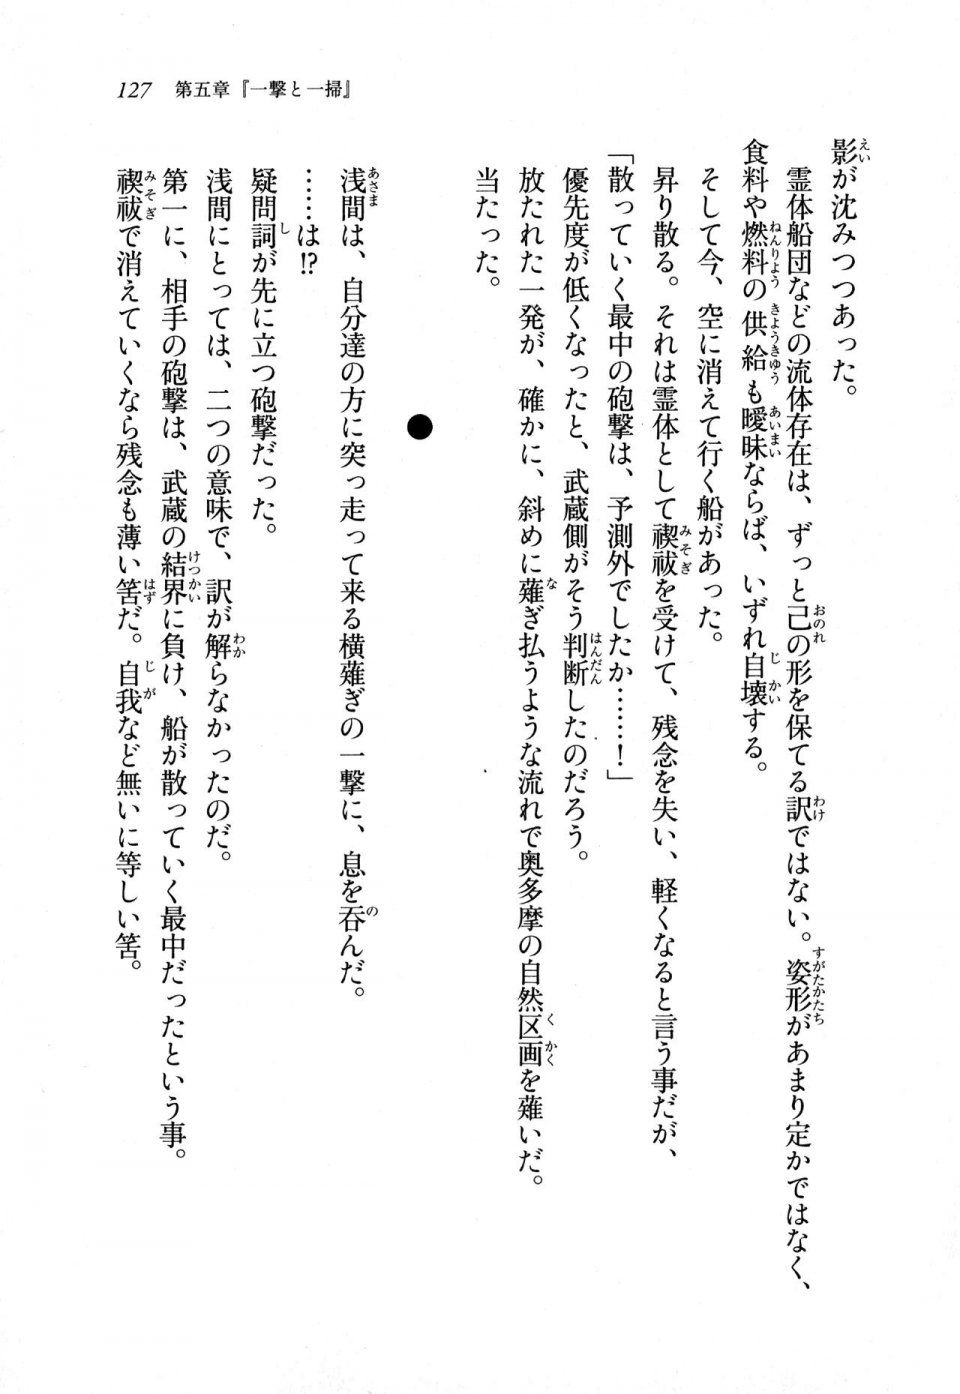 Kyoukai Senjou no Horizon LN Sidestory Vol 1 - Photo #125